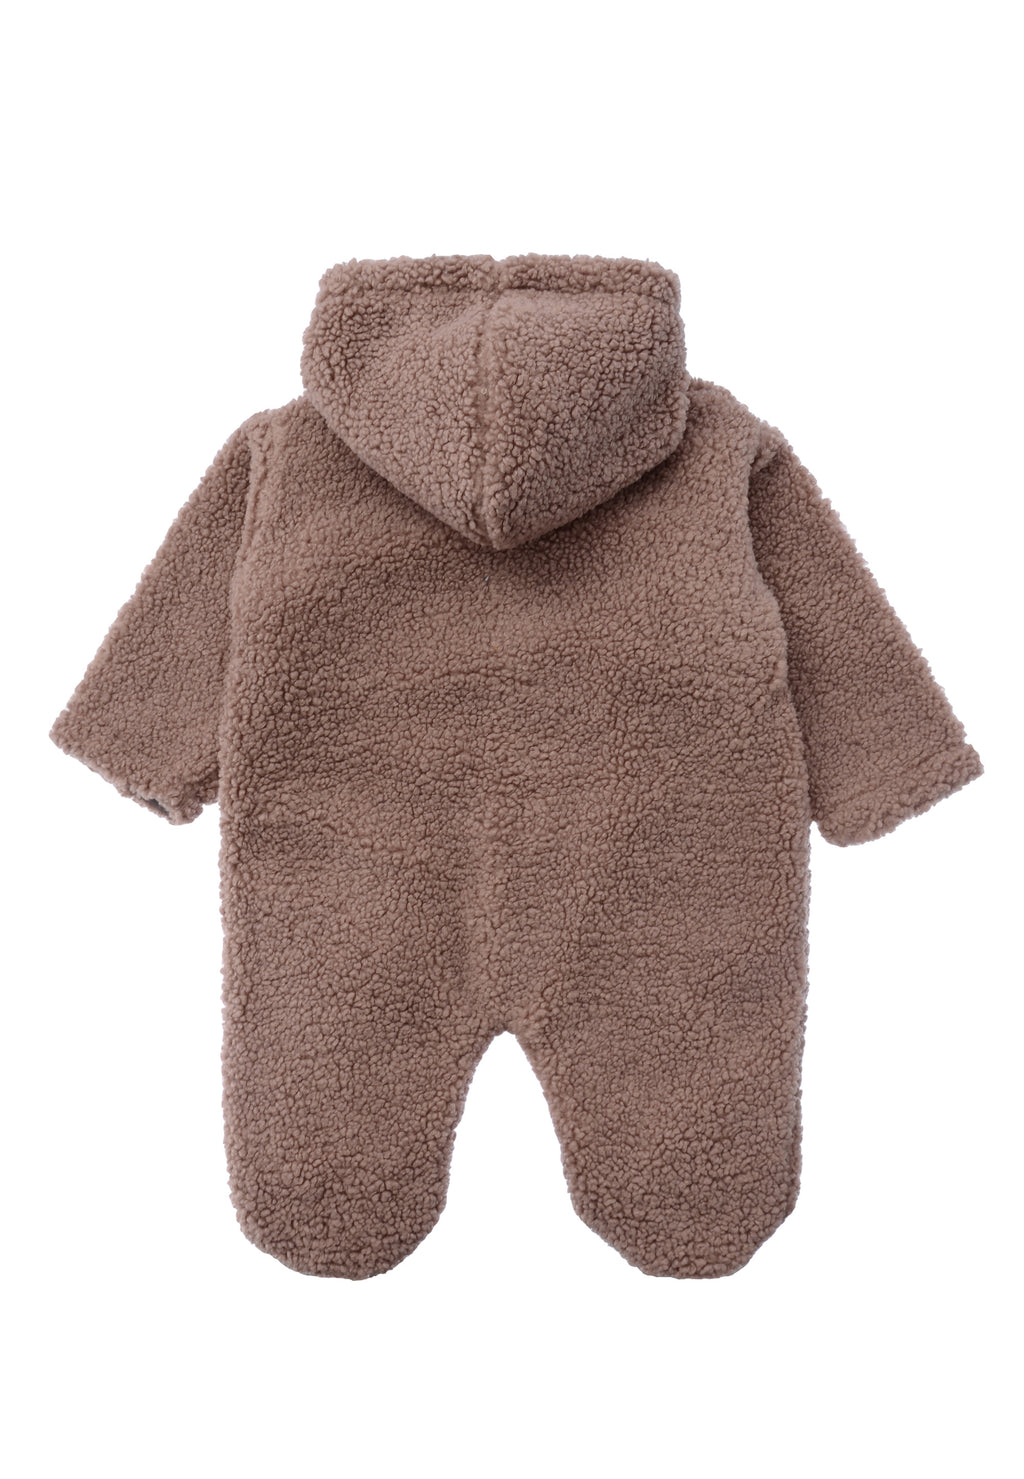 Fleeceoverall mit aufgesetzten Taschen, Knöpfen, Füßchen und einer praktischen Kapuze damit dein Baby rundum warm und Geborgen ist.